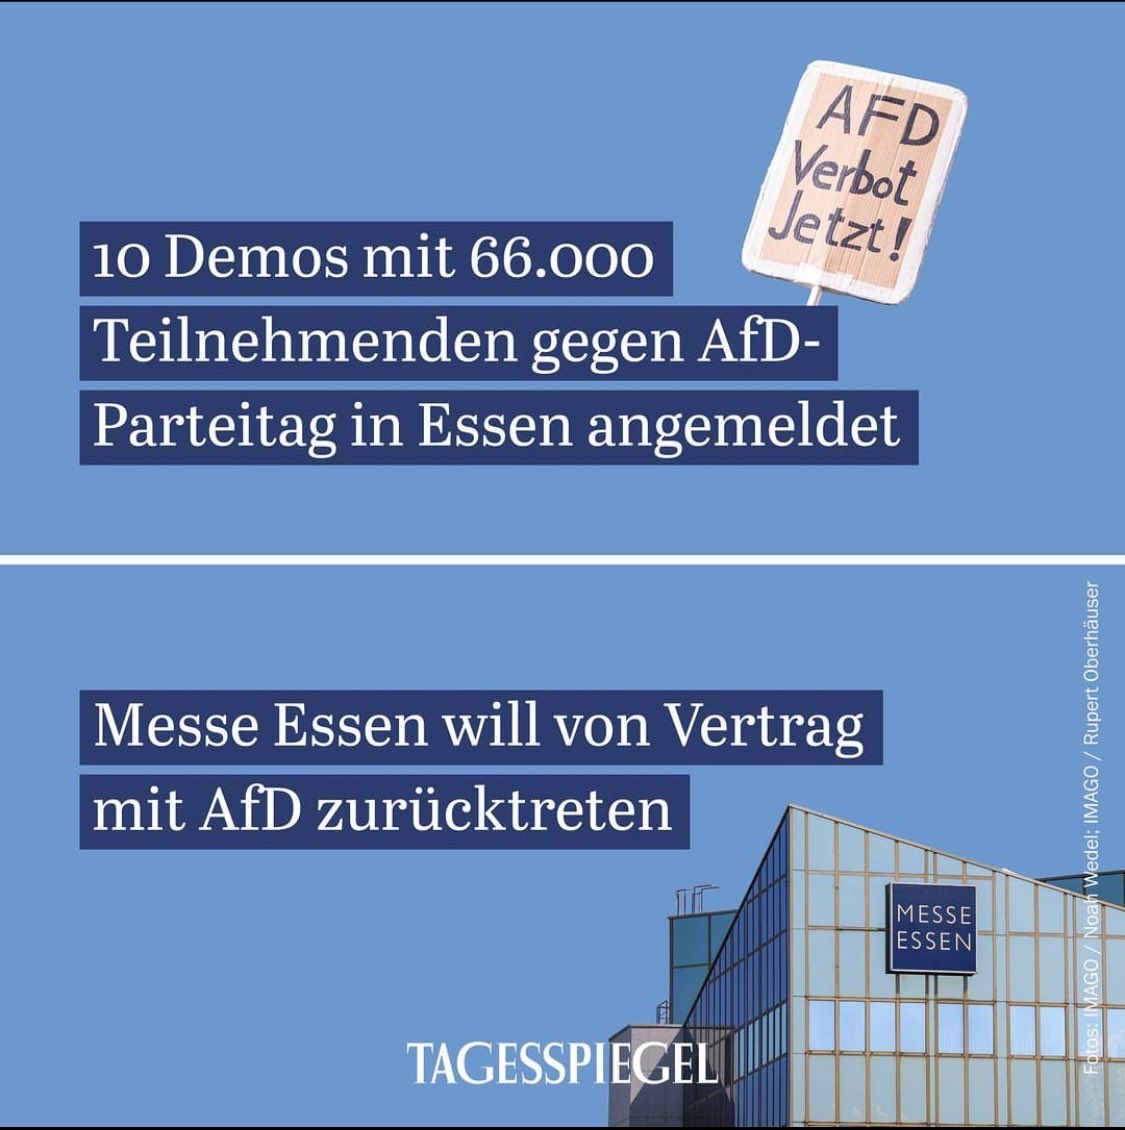 Die demokratische Gegenwehr gegen die AfD formiert sich, auch für den geplanten Parteitag Ende Juni in Essen. „Kein Fußbreit dem Faschismus“ - das Ruhrgebiet macht vor wie‘s geht!